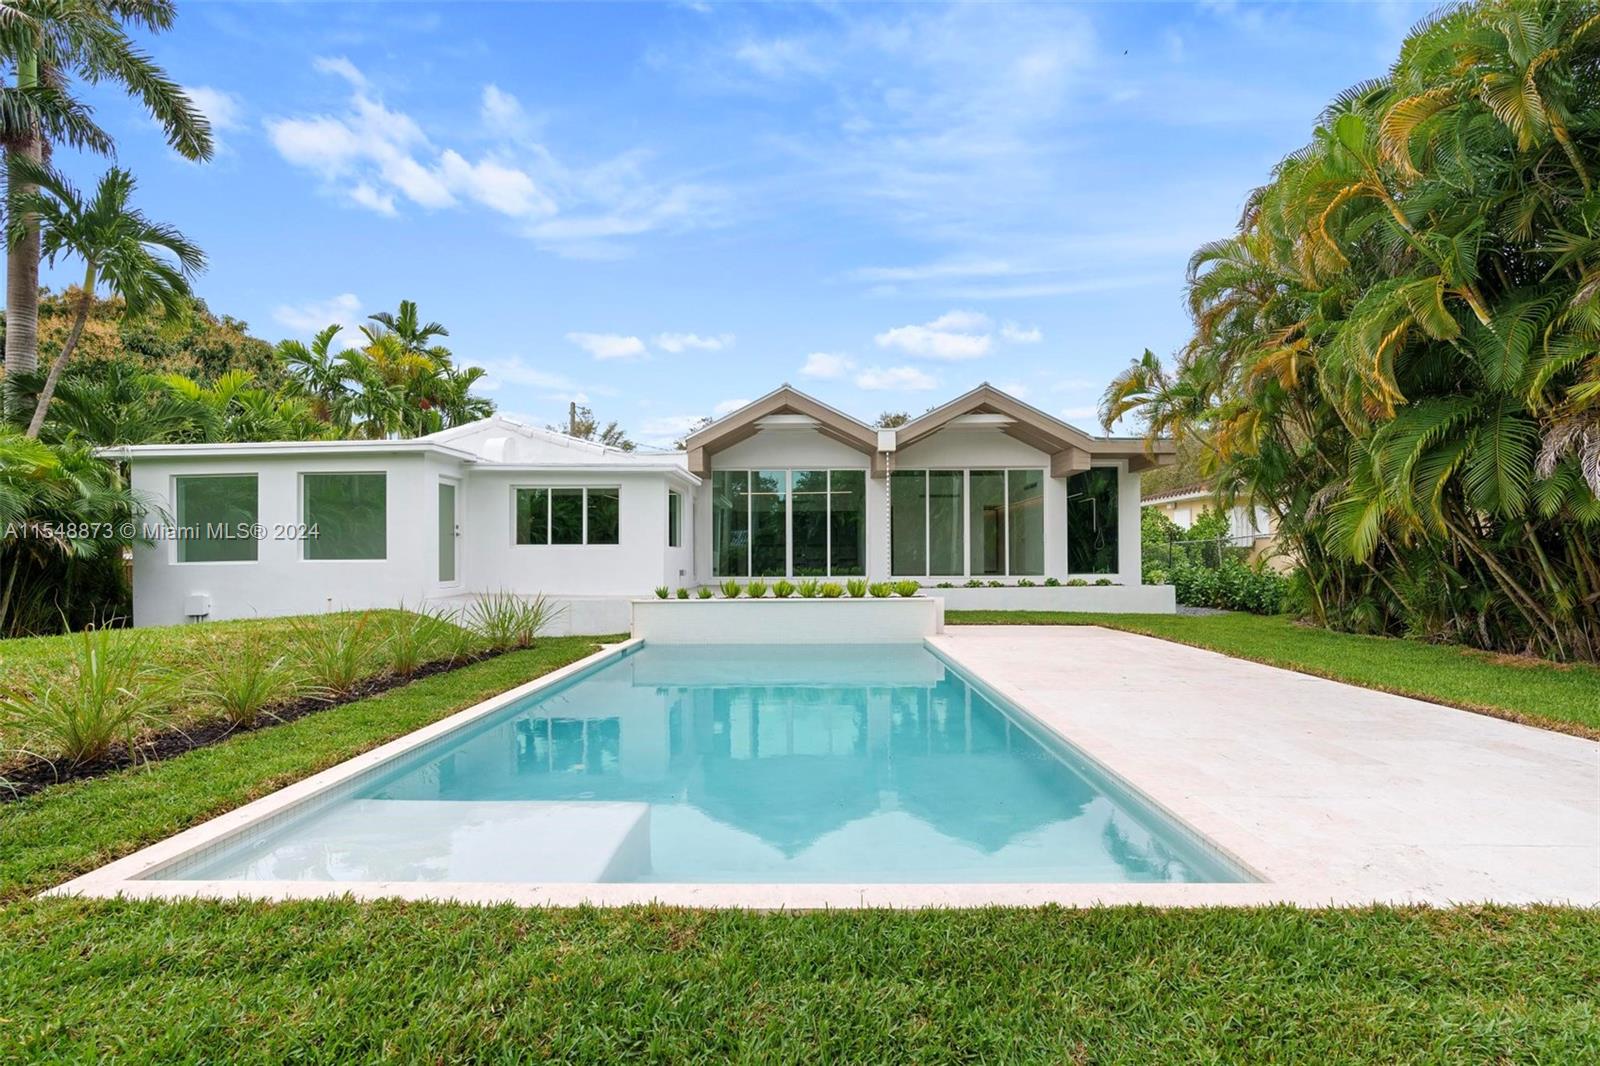 Property for Sale at 8633 Ne Miami Ct, El Portal, Miami-Dade County, Florida - Bedrooms: 4 
Bathrooms: 3  - $1,999,000